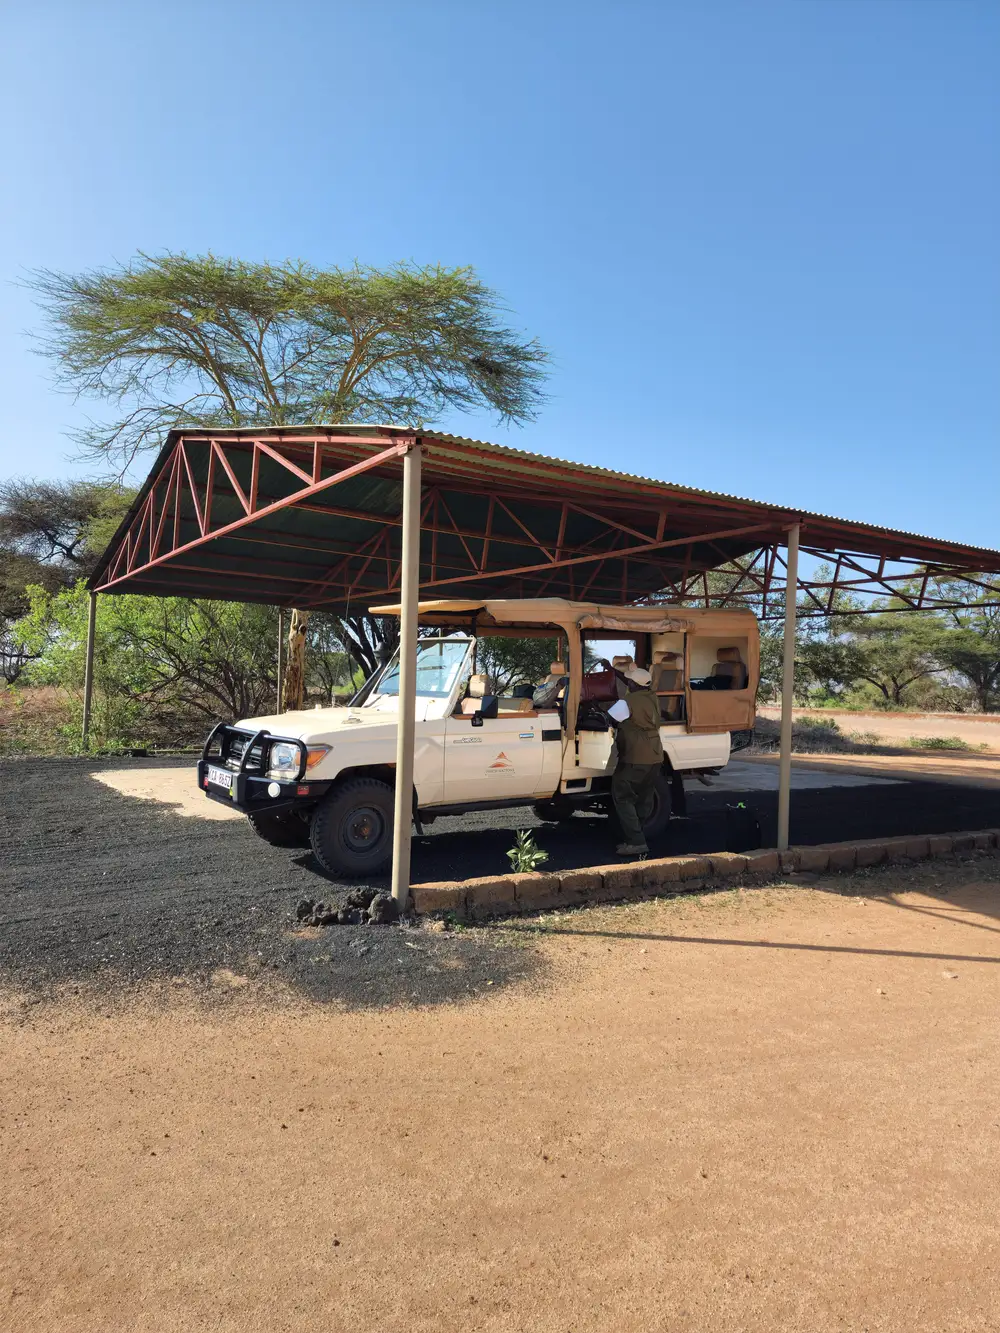 A safari van under a shade